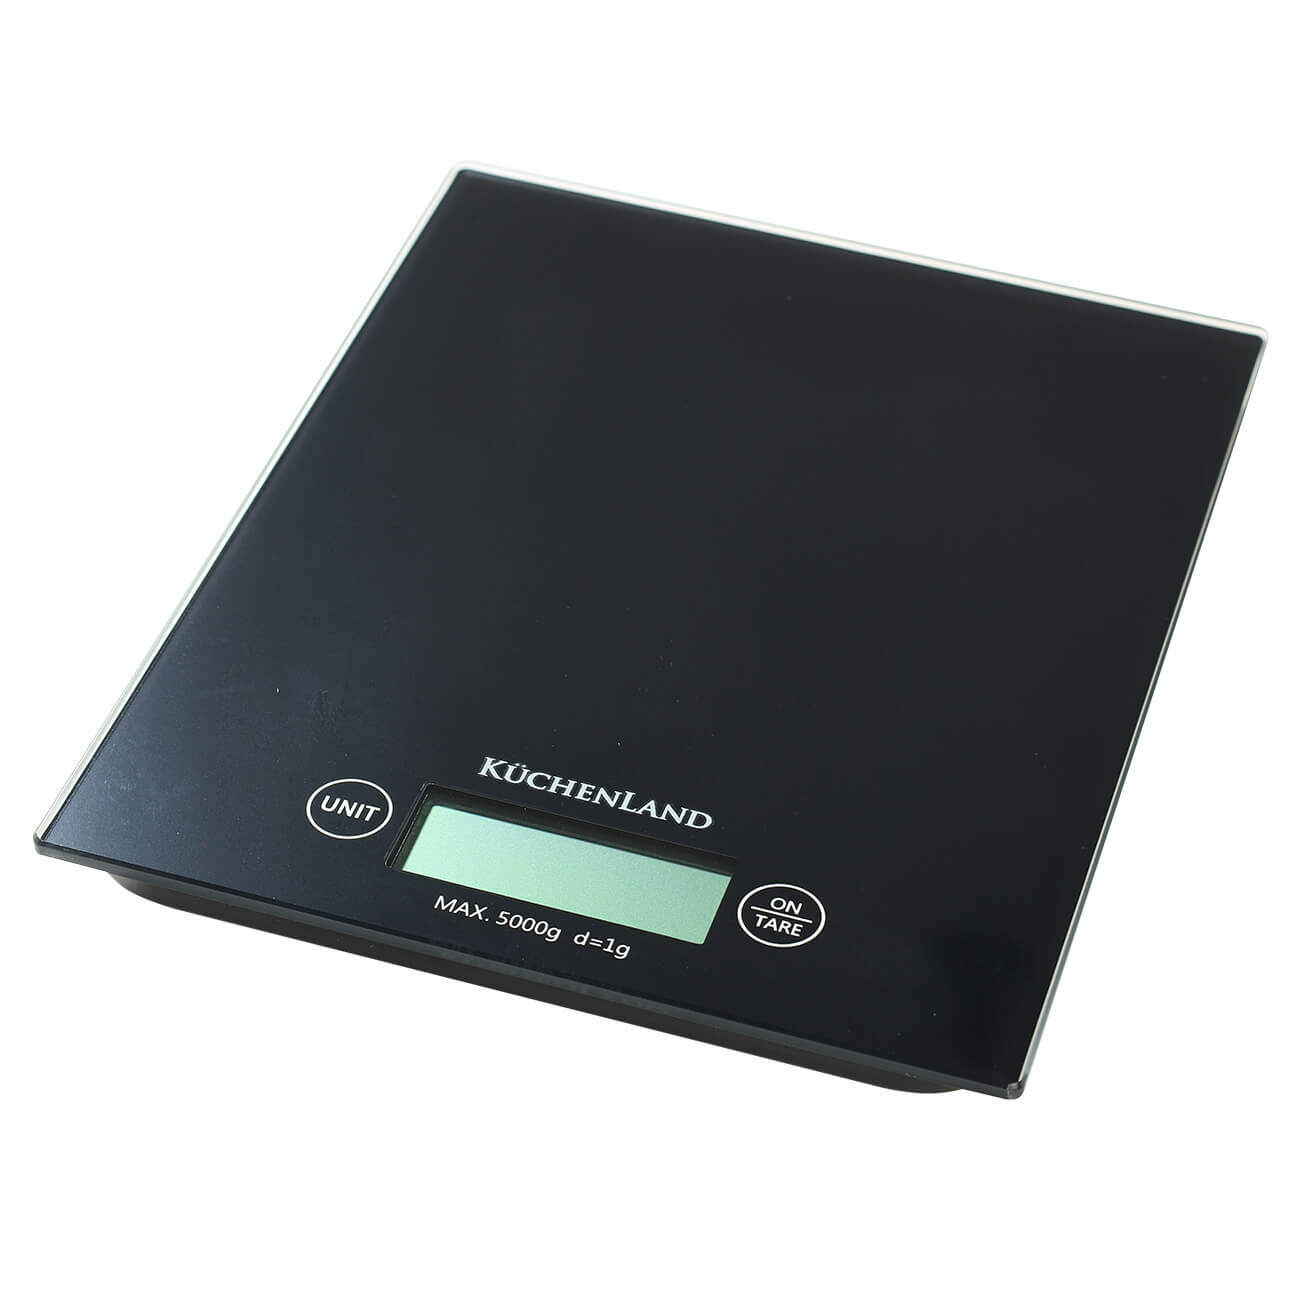 Весы кухонные, 20х16 см, электронные, стекло/пластик, черные, Libra весы кухонные luazon lvk 501 электронные до 5 кг белые